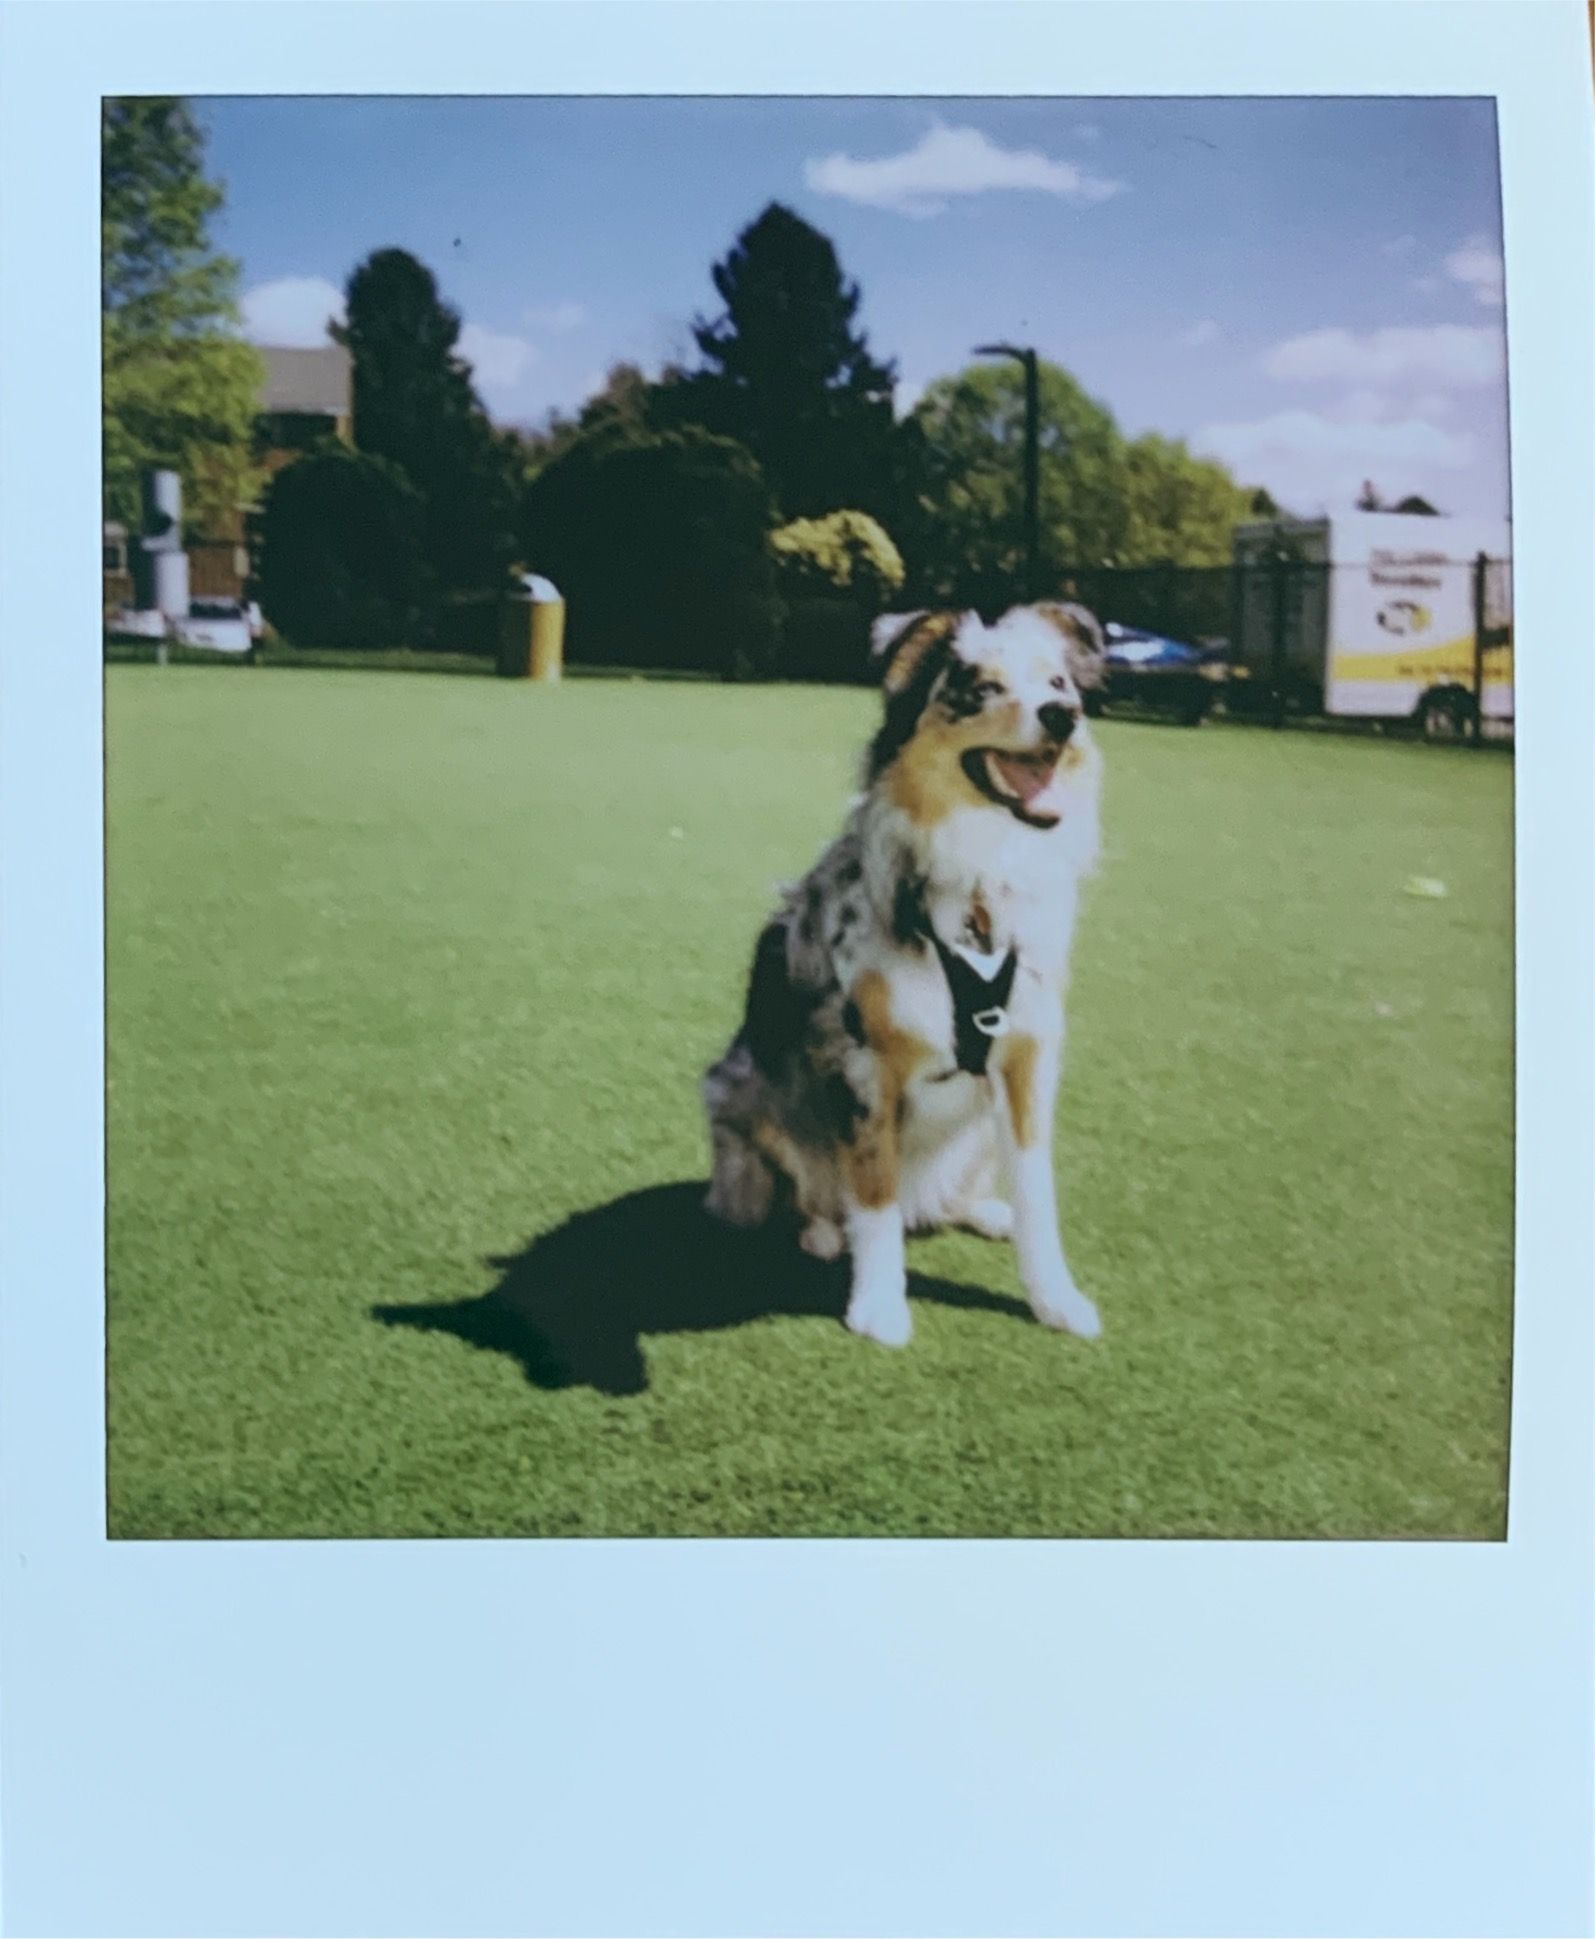 polaroid of dog on grass in sunlight